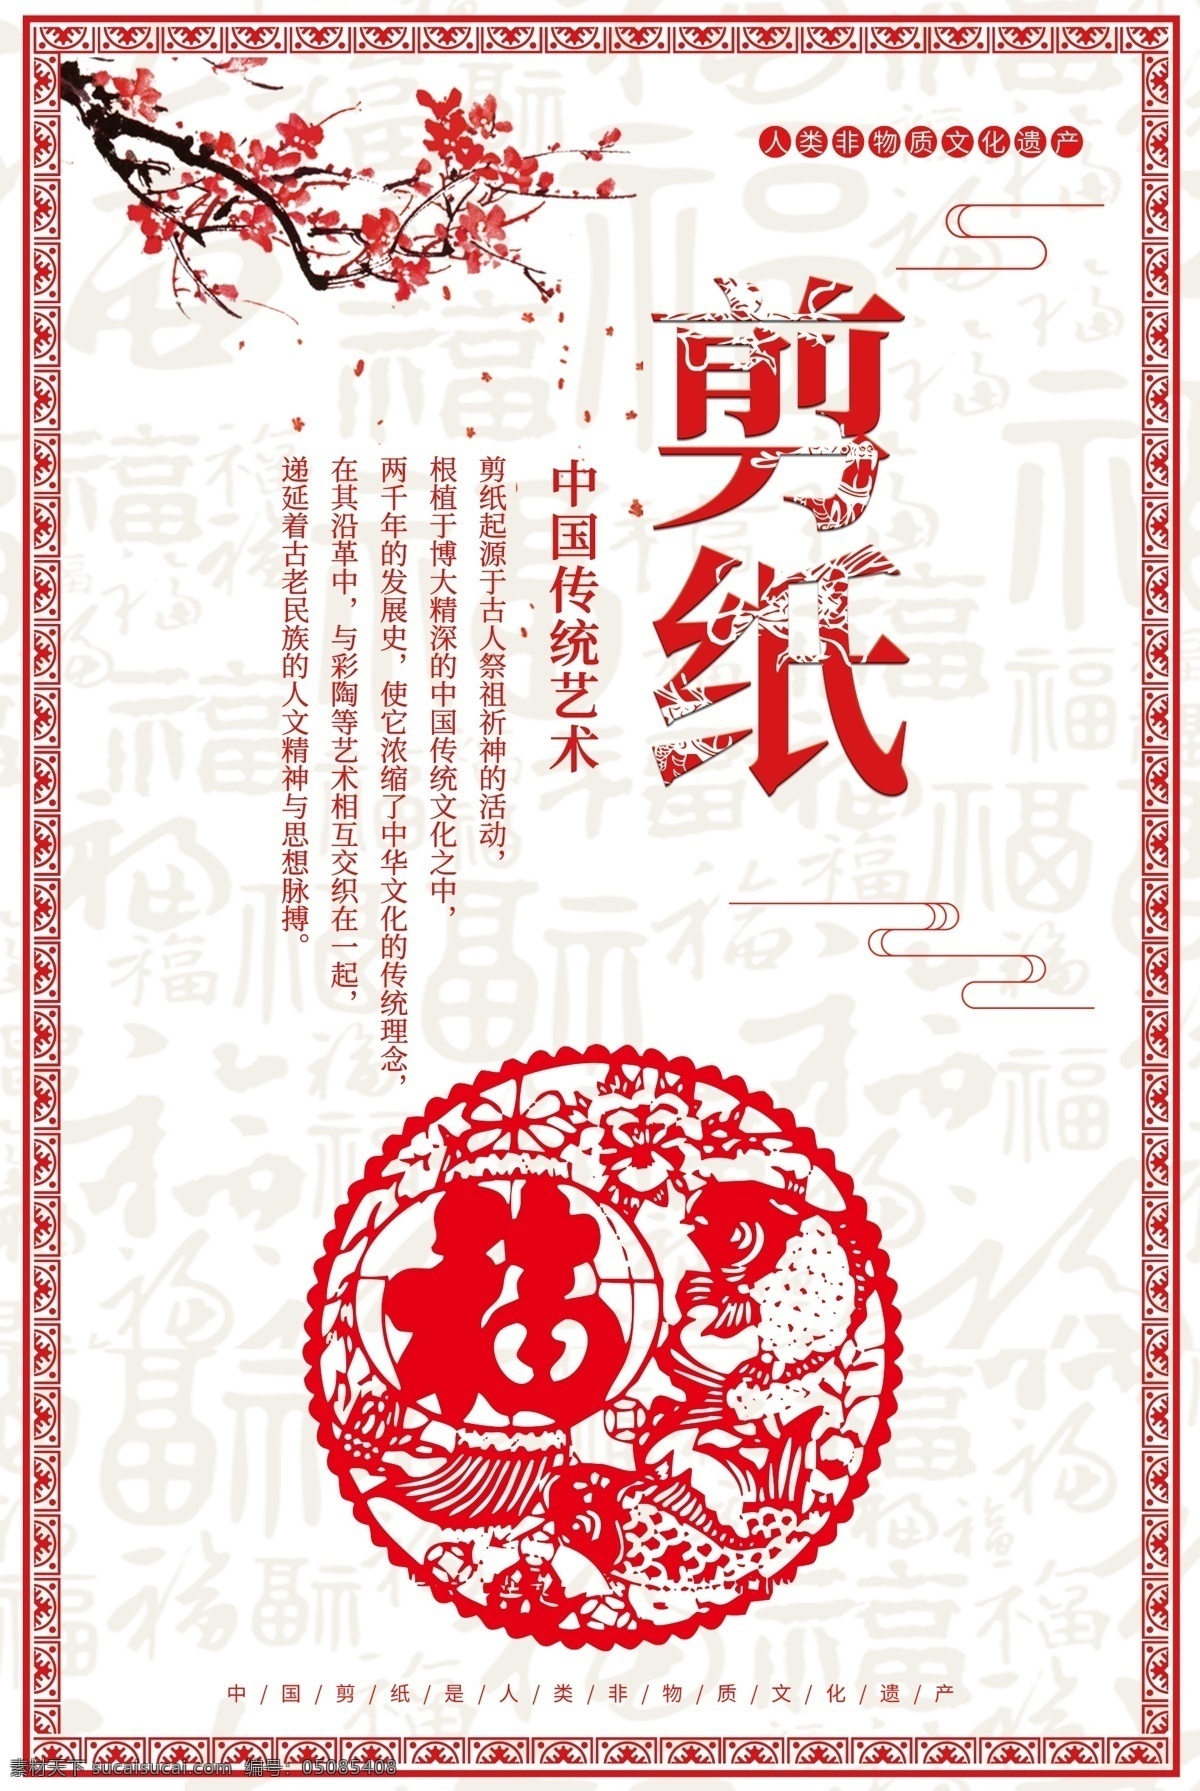 中国 传统 艺术 系列 之一 剪纸 系列之一 梅花 文化 中国风 传统手艺